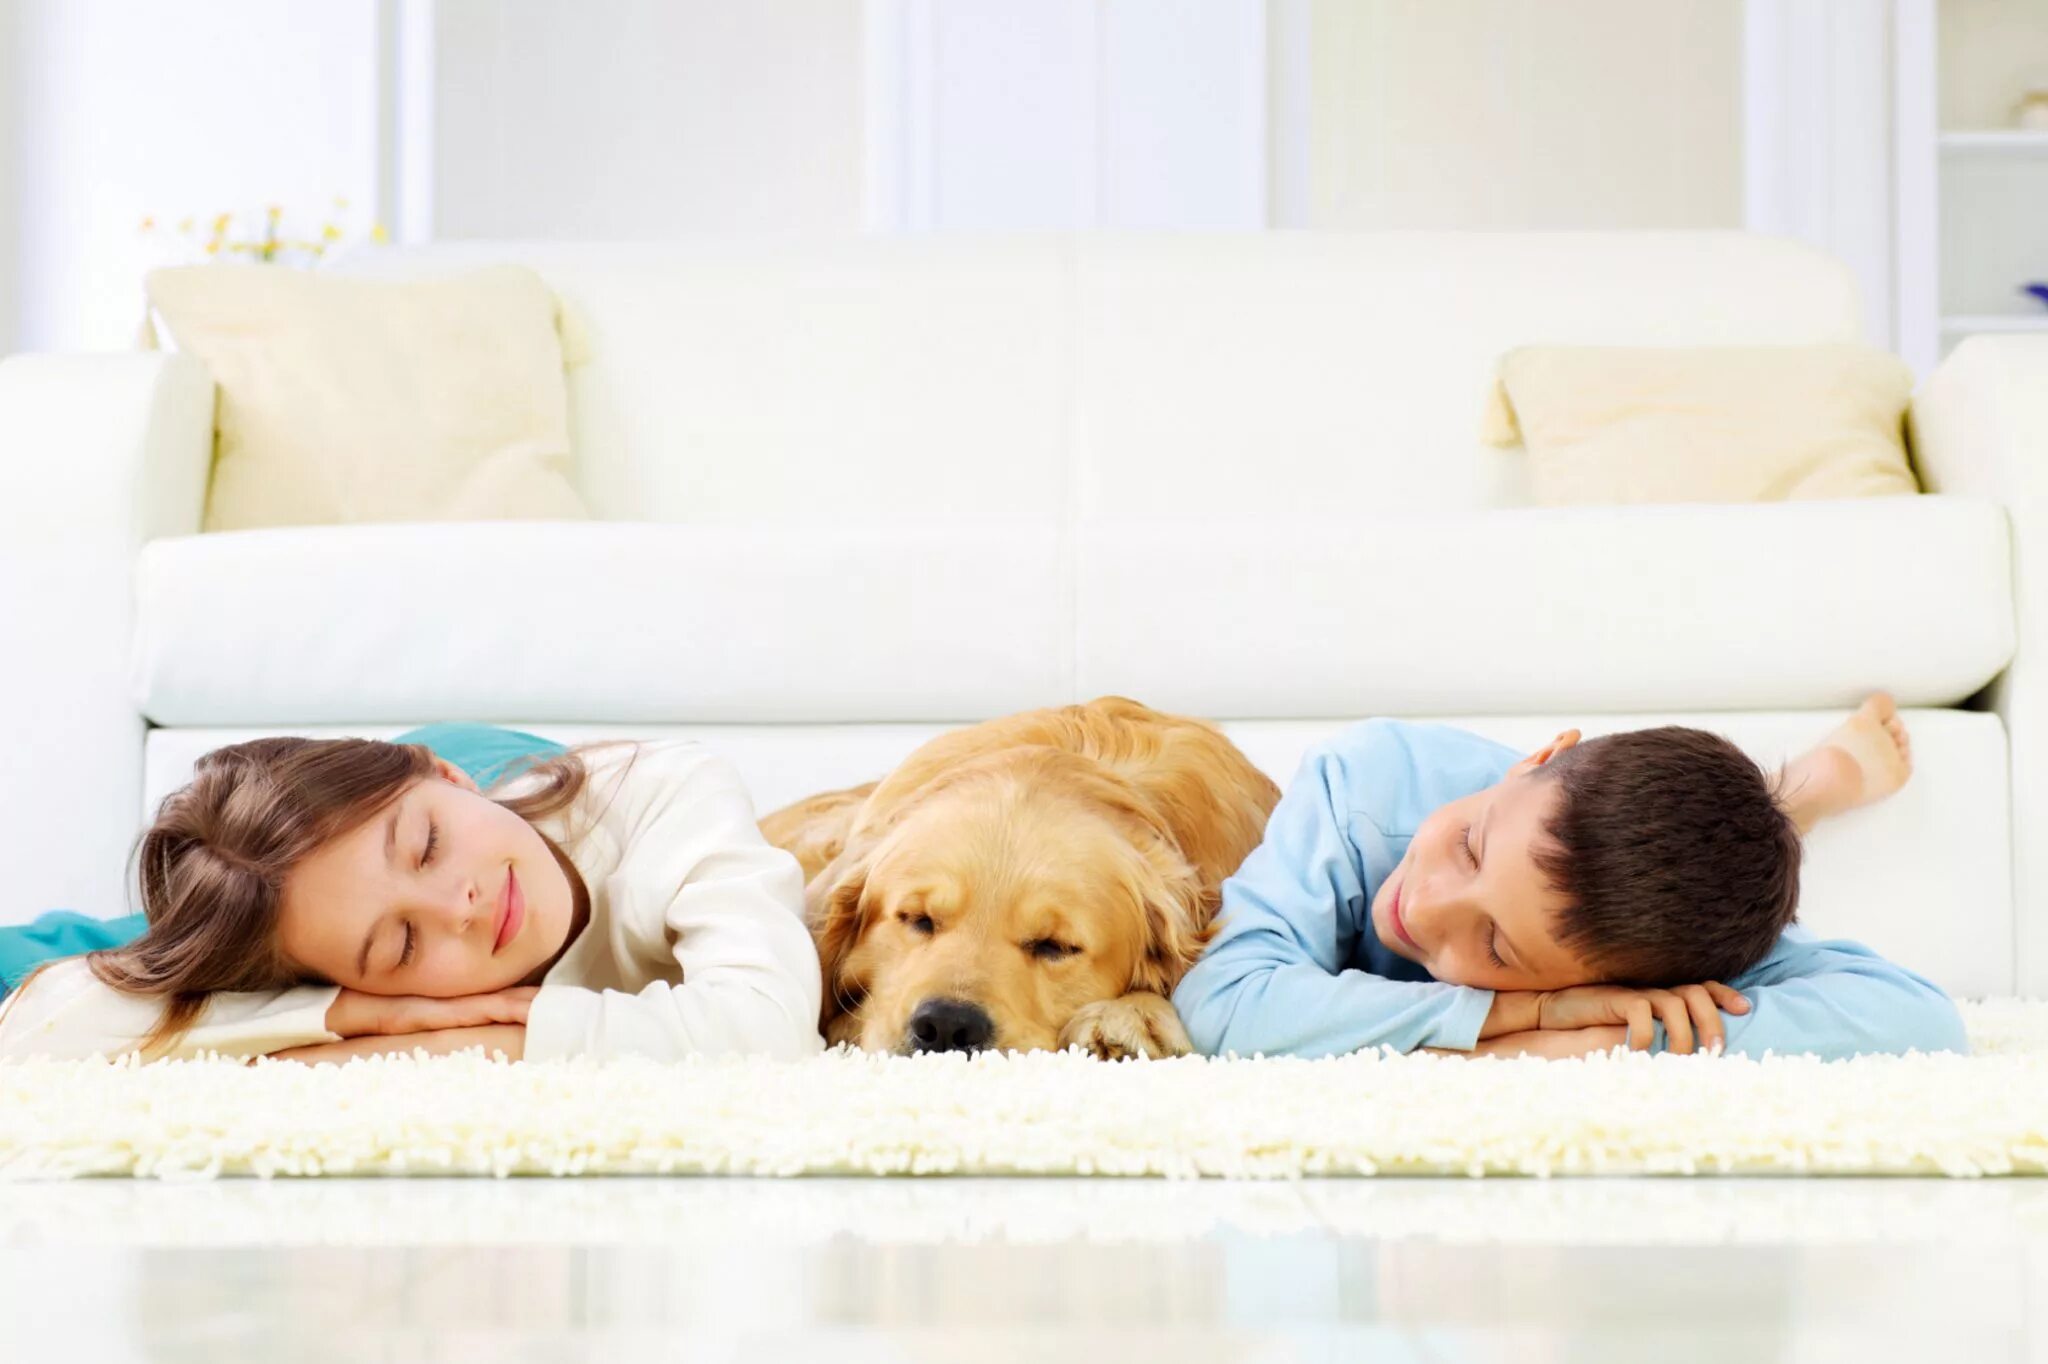 Диван для детей. Дети и животные на диване. Собака на ковре. Дети и животные на ковре.